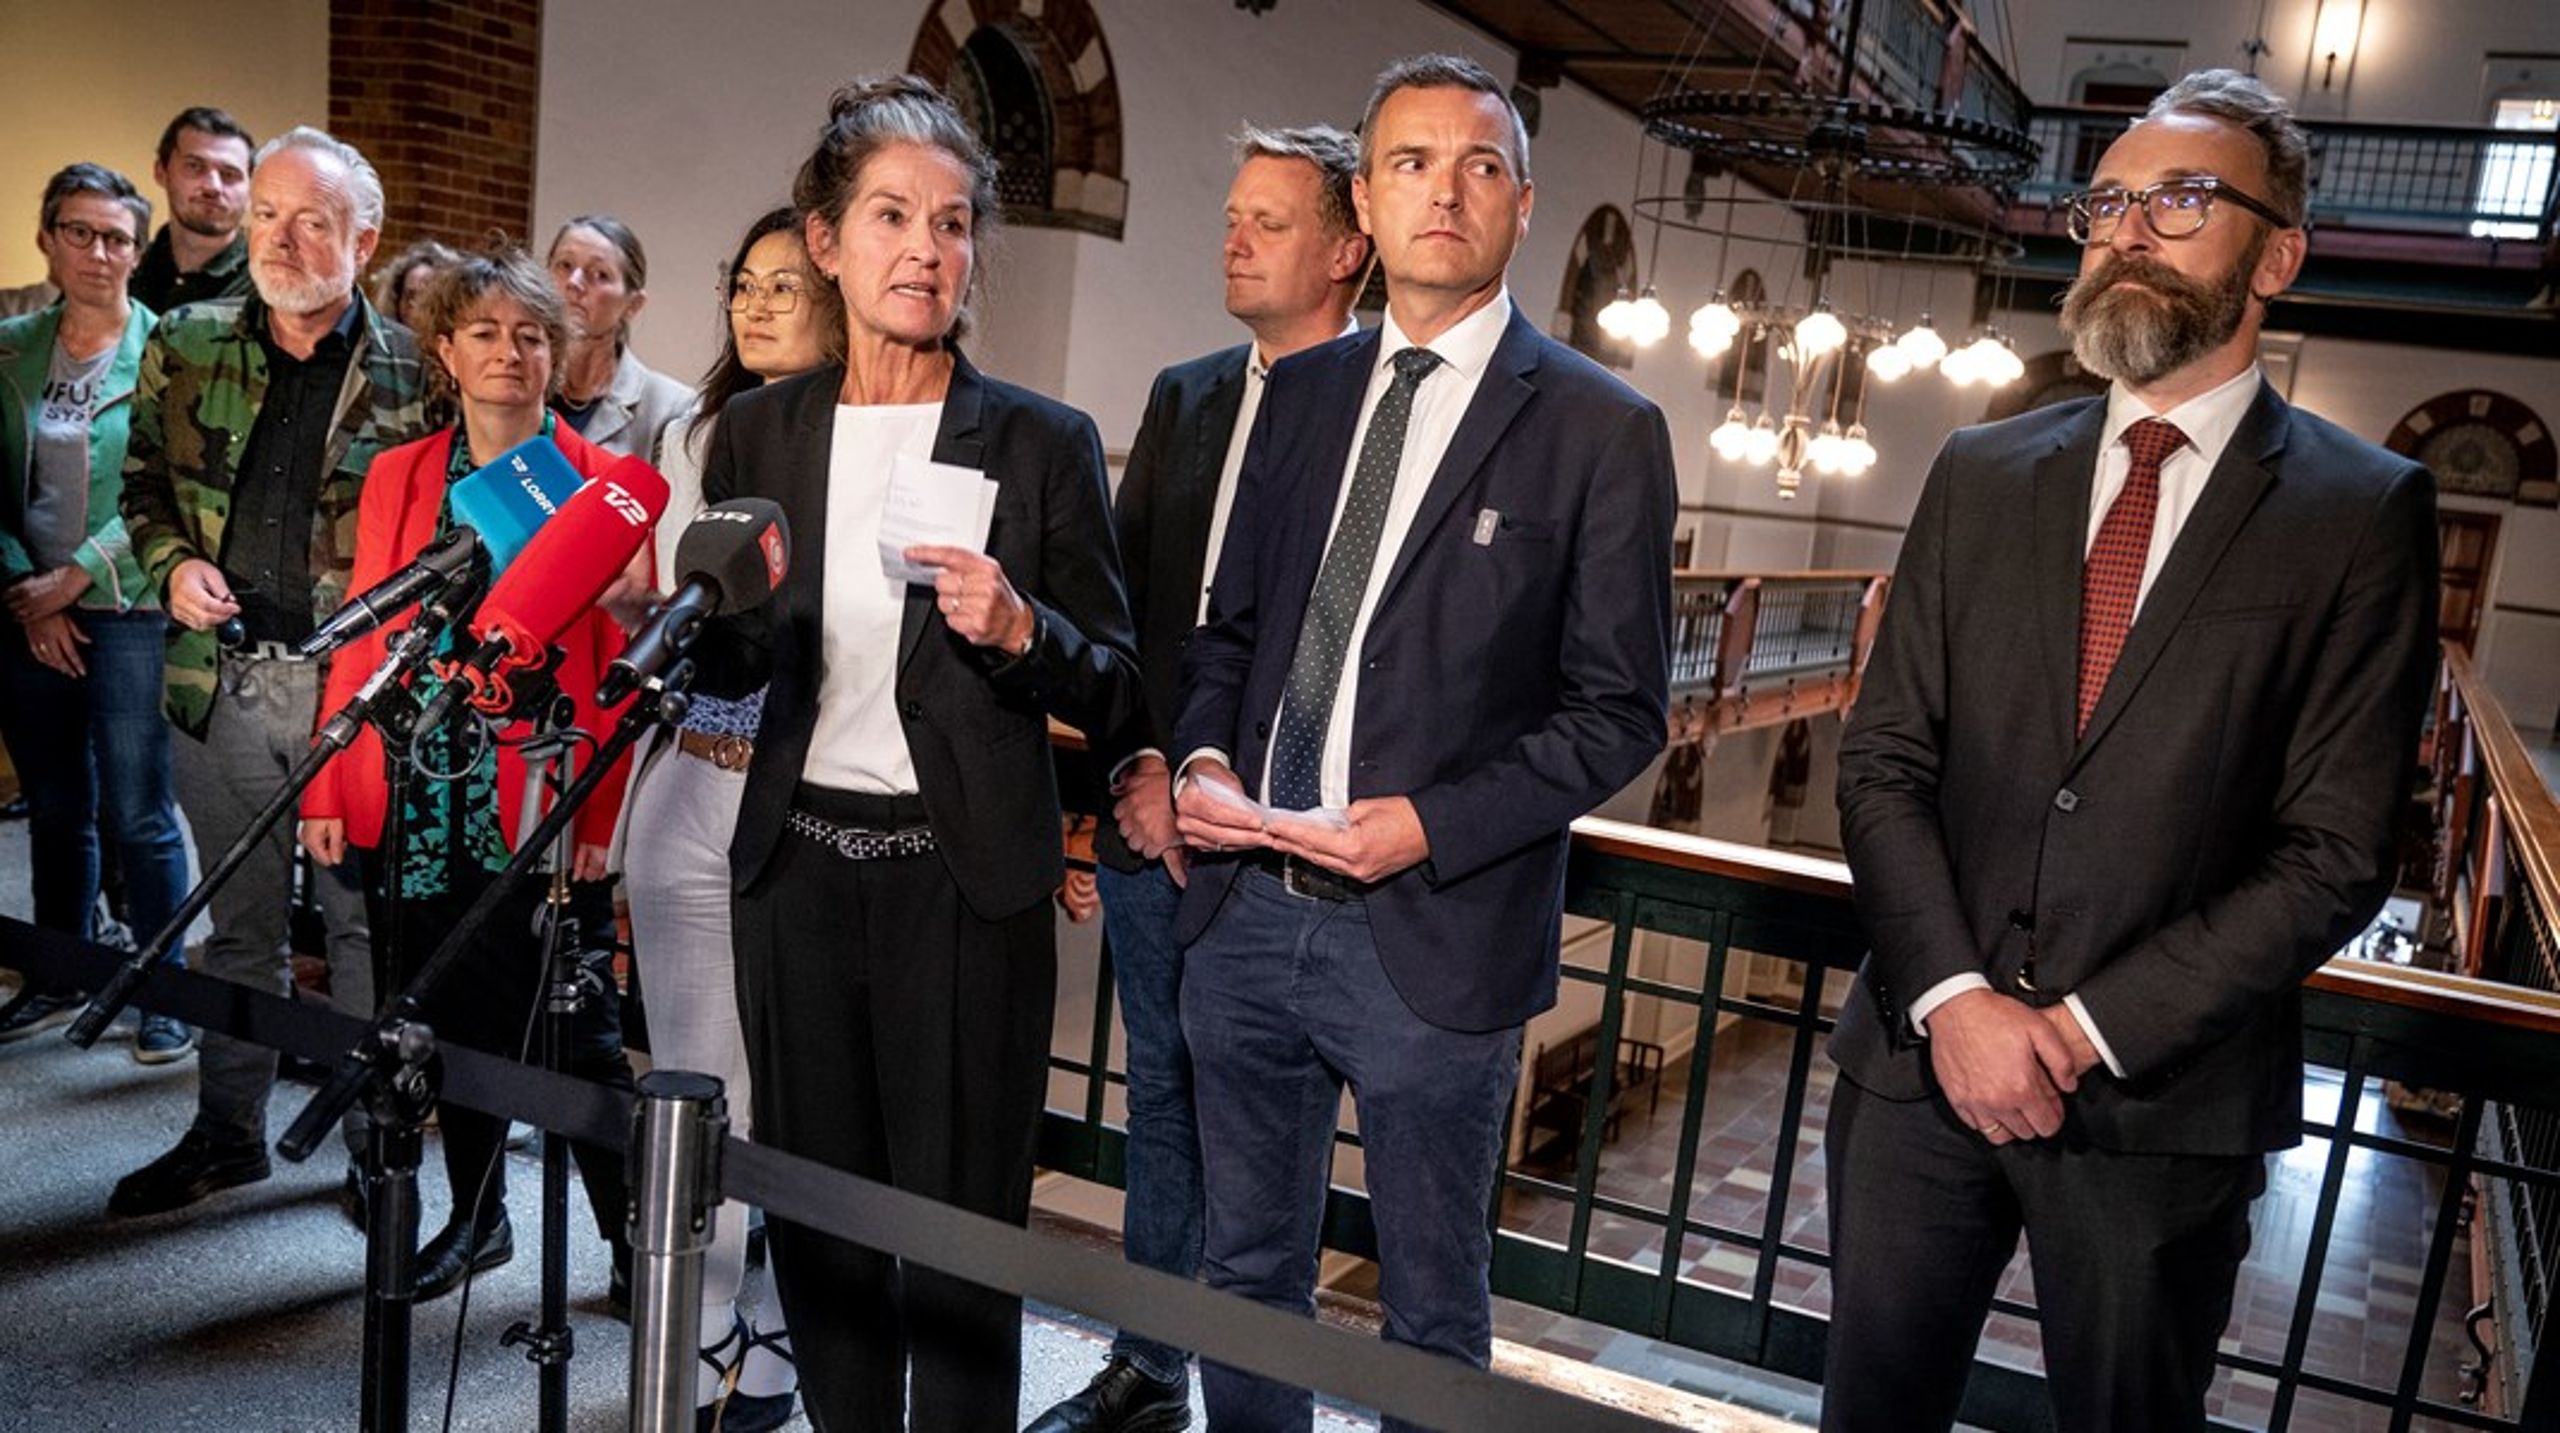 Enhedslistens socialborgmester Karina Vestergård Madsen flankeret af Konservatives leder på rådhuset Jakob Næsager ved præsentation af budgetaftalen i 2022.